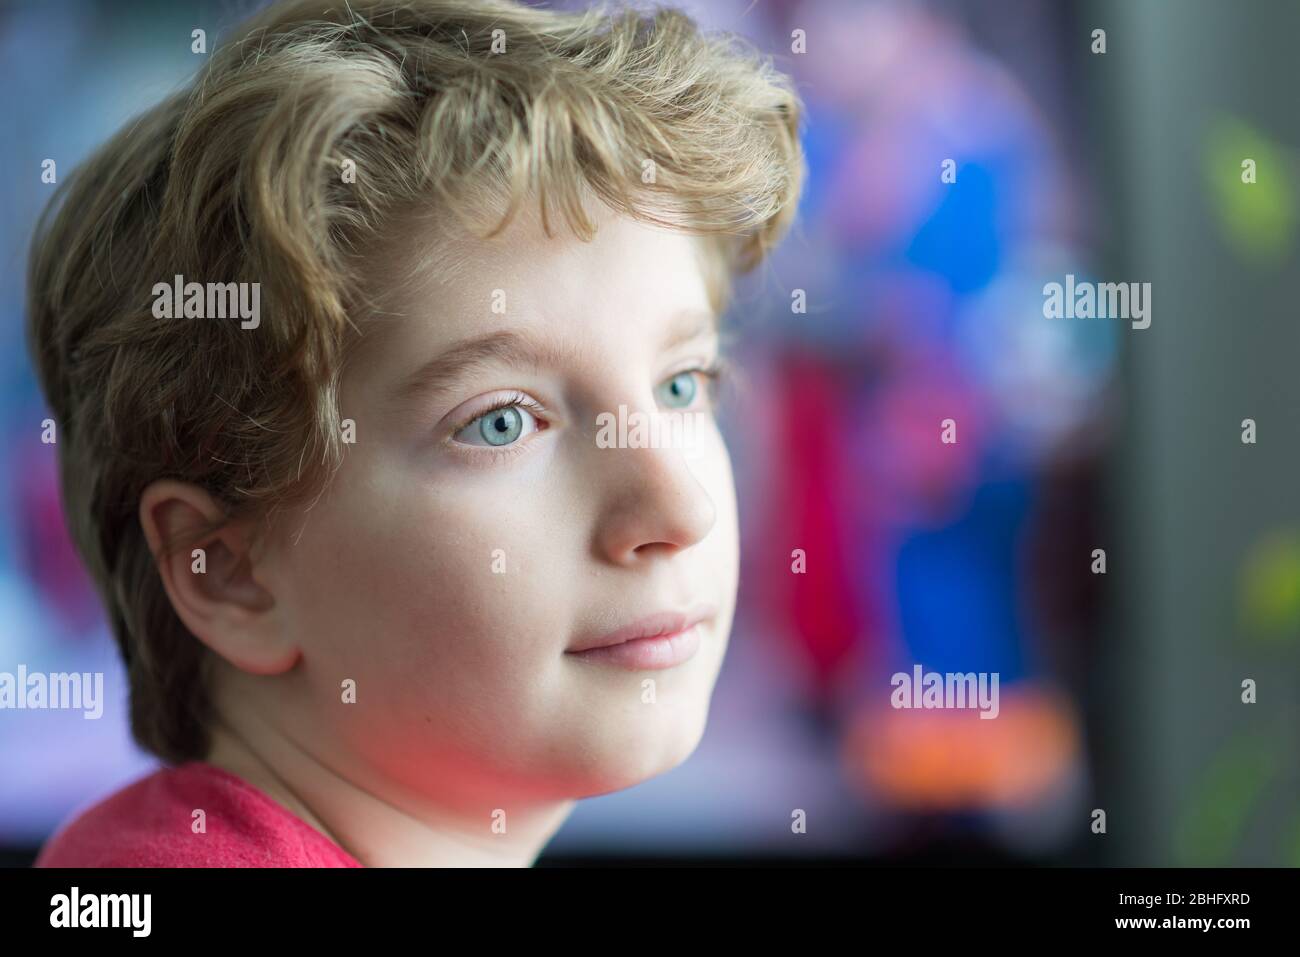 Retrato de un niño con ojos azules, fondo colorido y borroso Foto de stock